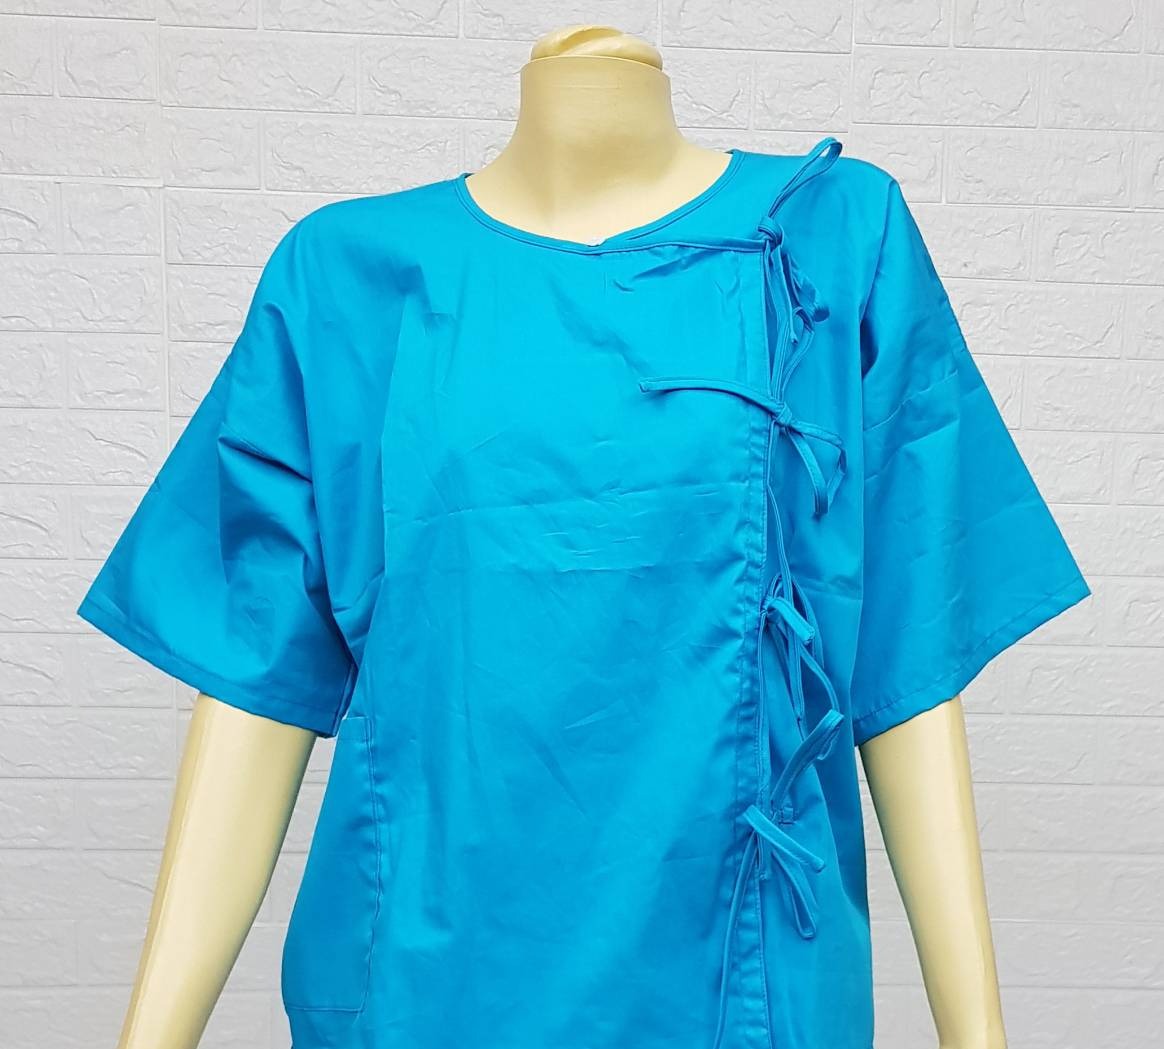  ชุดเสื้อกางเกงสำหรับผู้ป่วย เสื้อคอกลม พร้อมกางเกงหูรูดขายาว  ผ้าฝ้าย 100%  MADE IN THAILAND  ผู้ป่วยติดเตียง   ผู้ป่วยพักฟื้นหลังผ่าตัด  